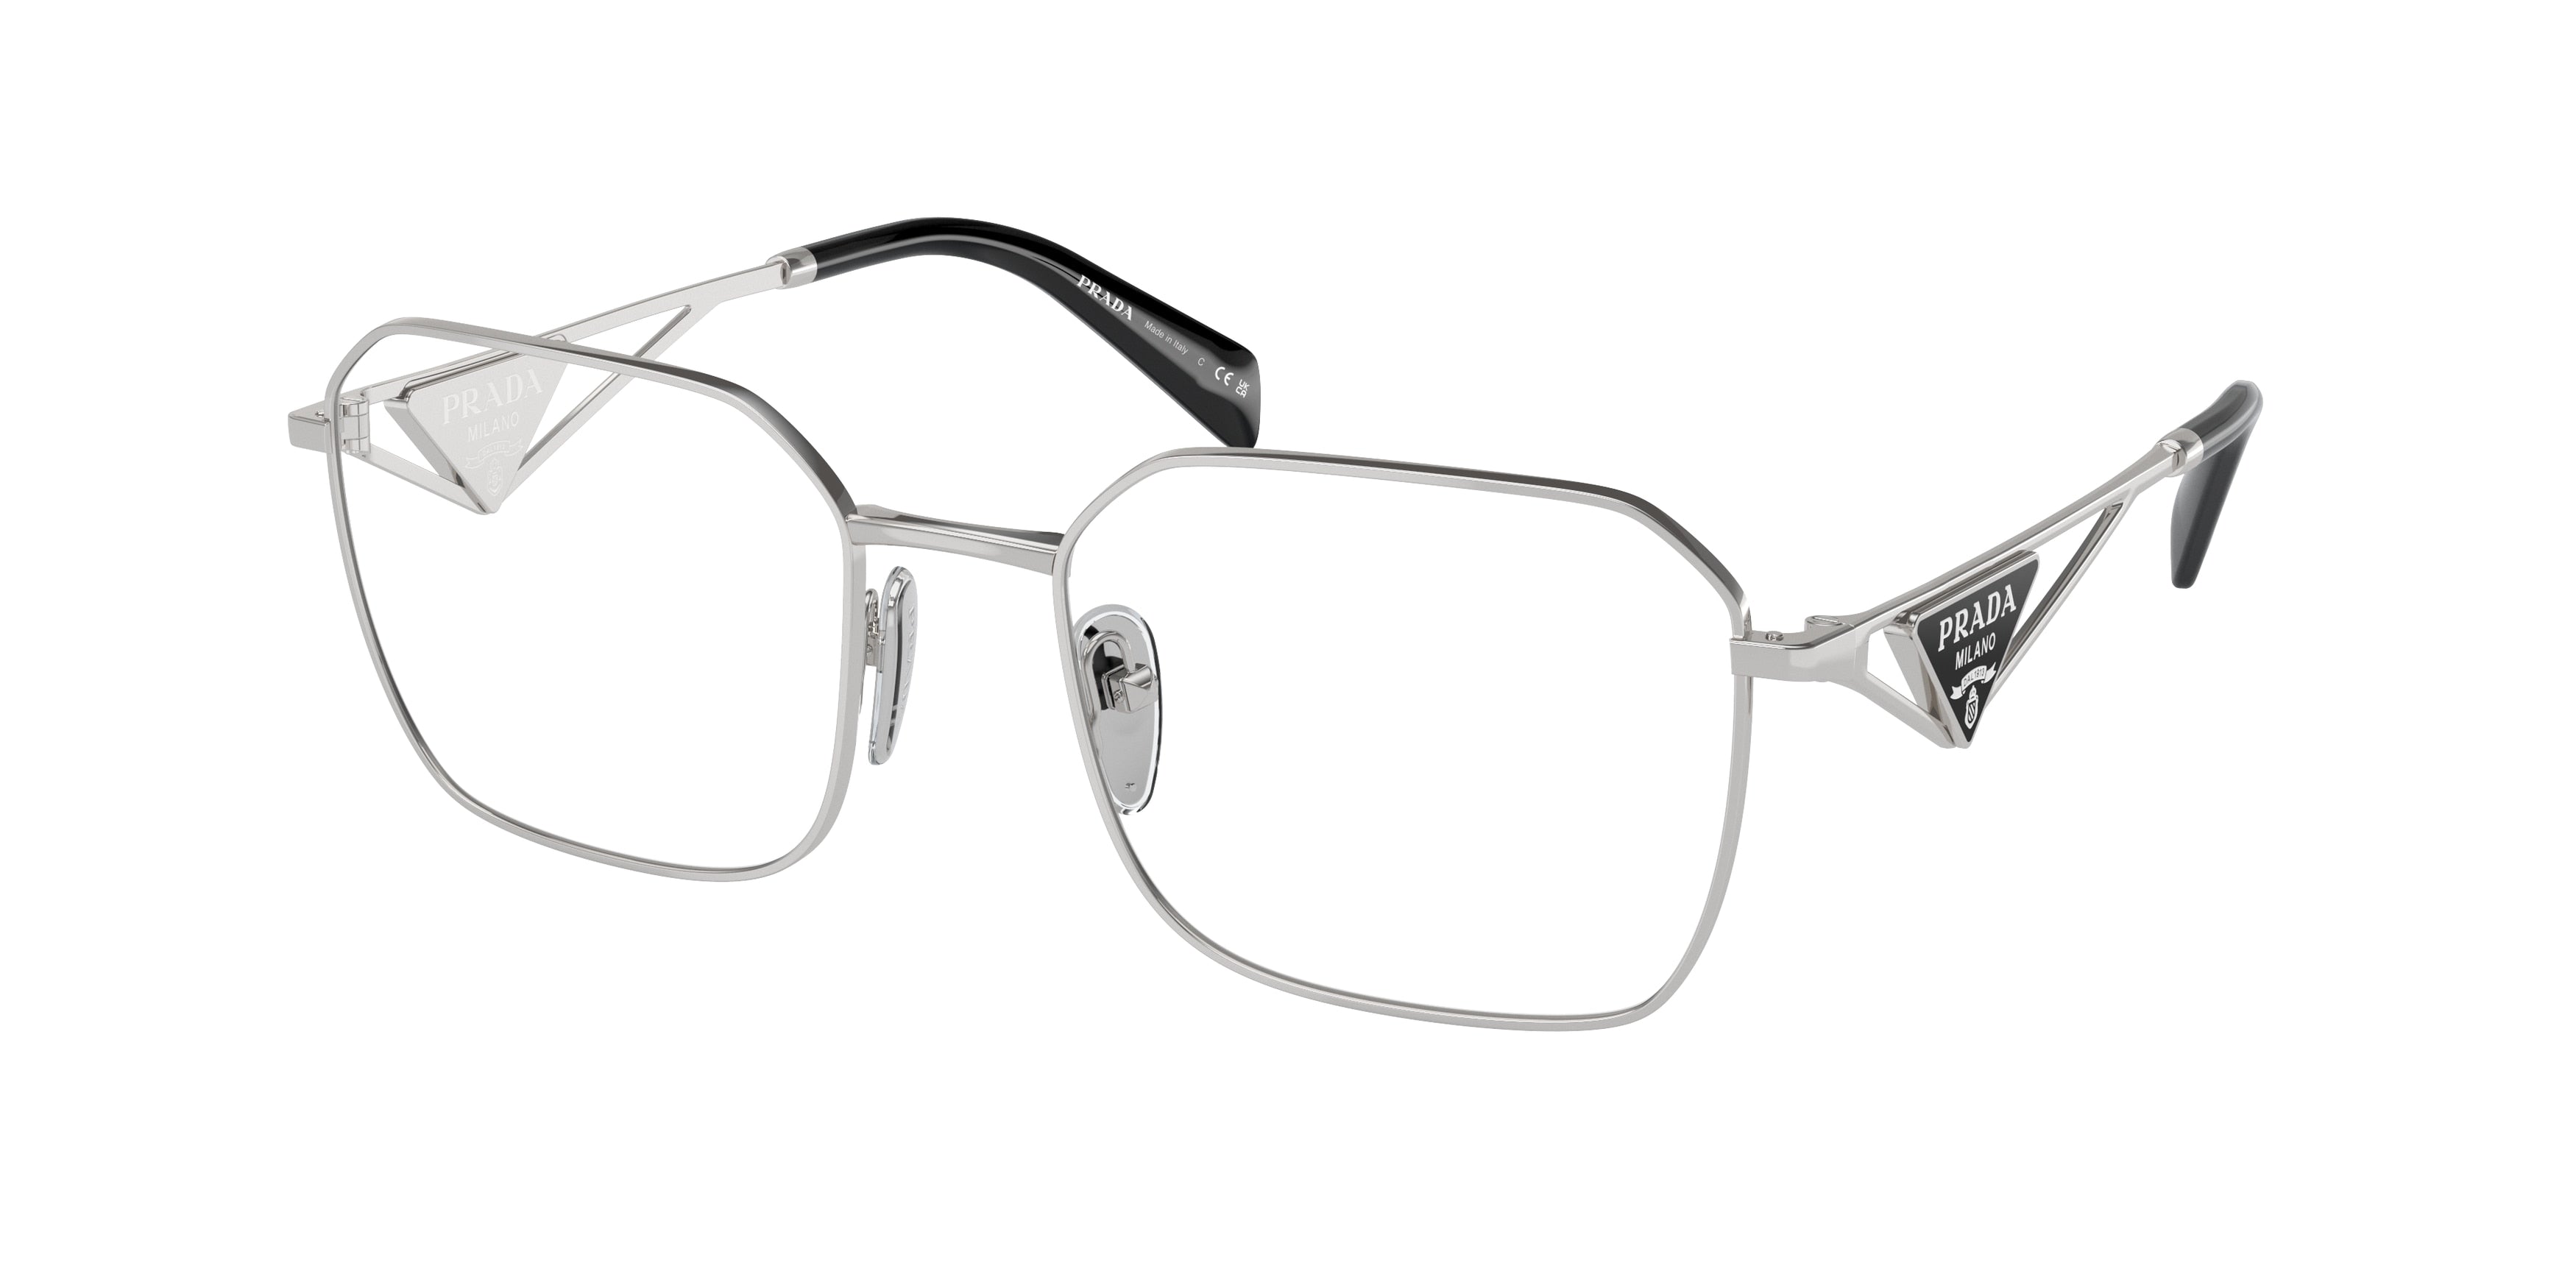 Prada PRA51V Irregular Eyeglasses